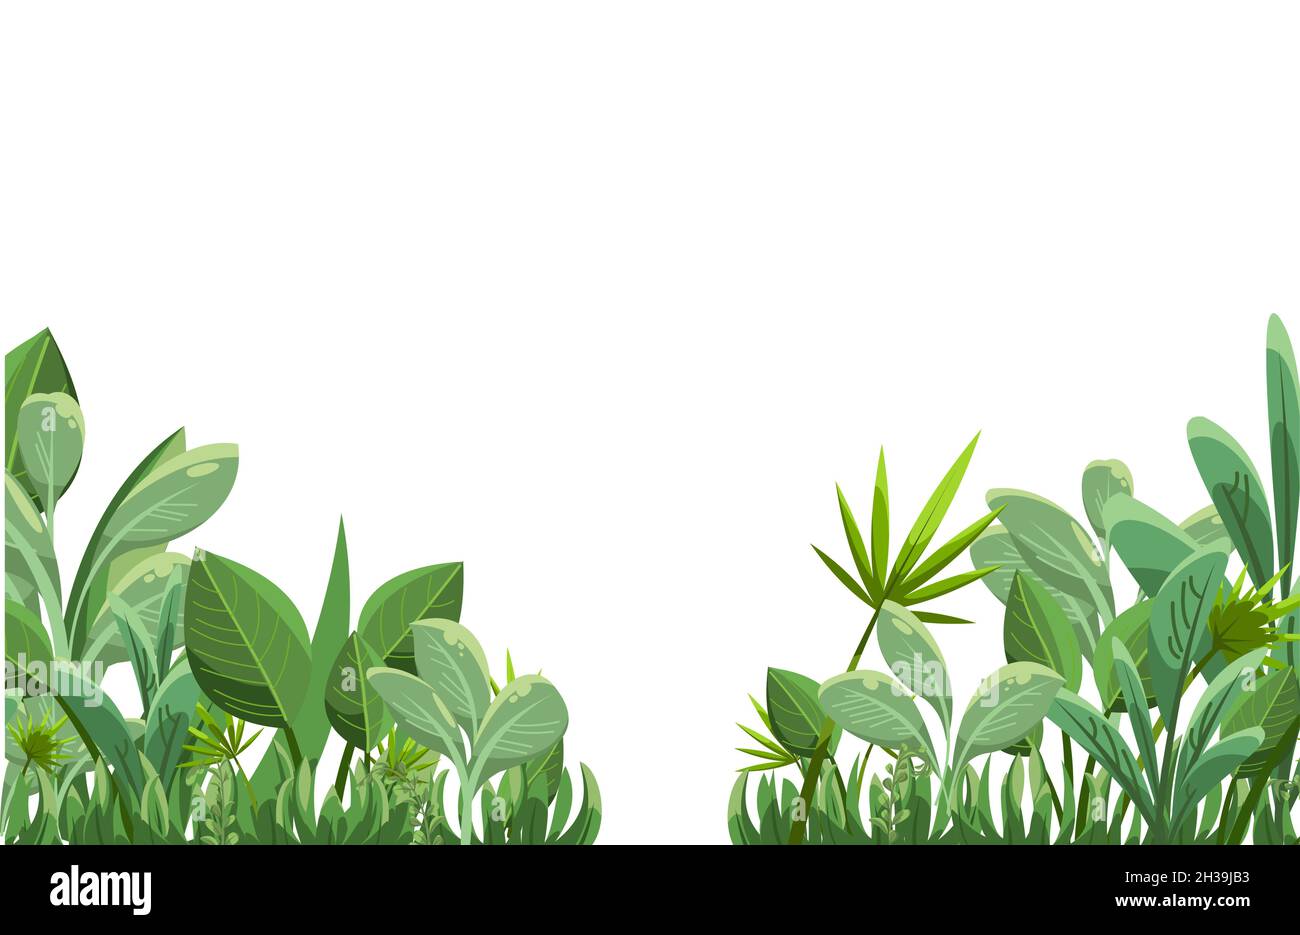 Plantas dibujo animado fotografías e imágenes de alta resolución - Alamy